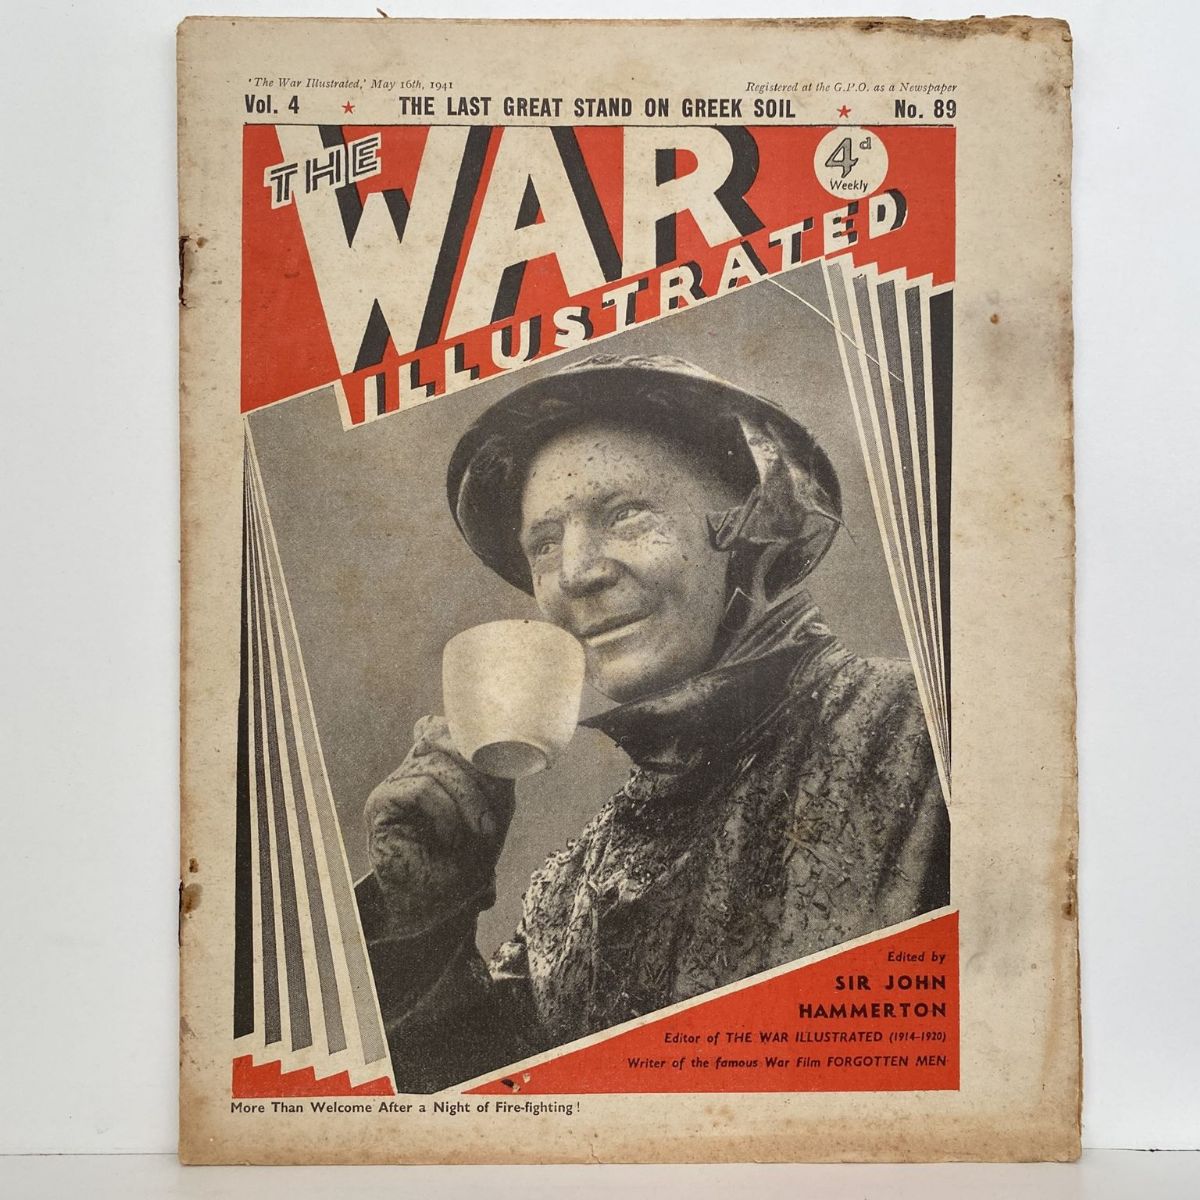 THE WAR ILLUSTRATED - Vol 4, No 89, 16th May 1941